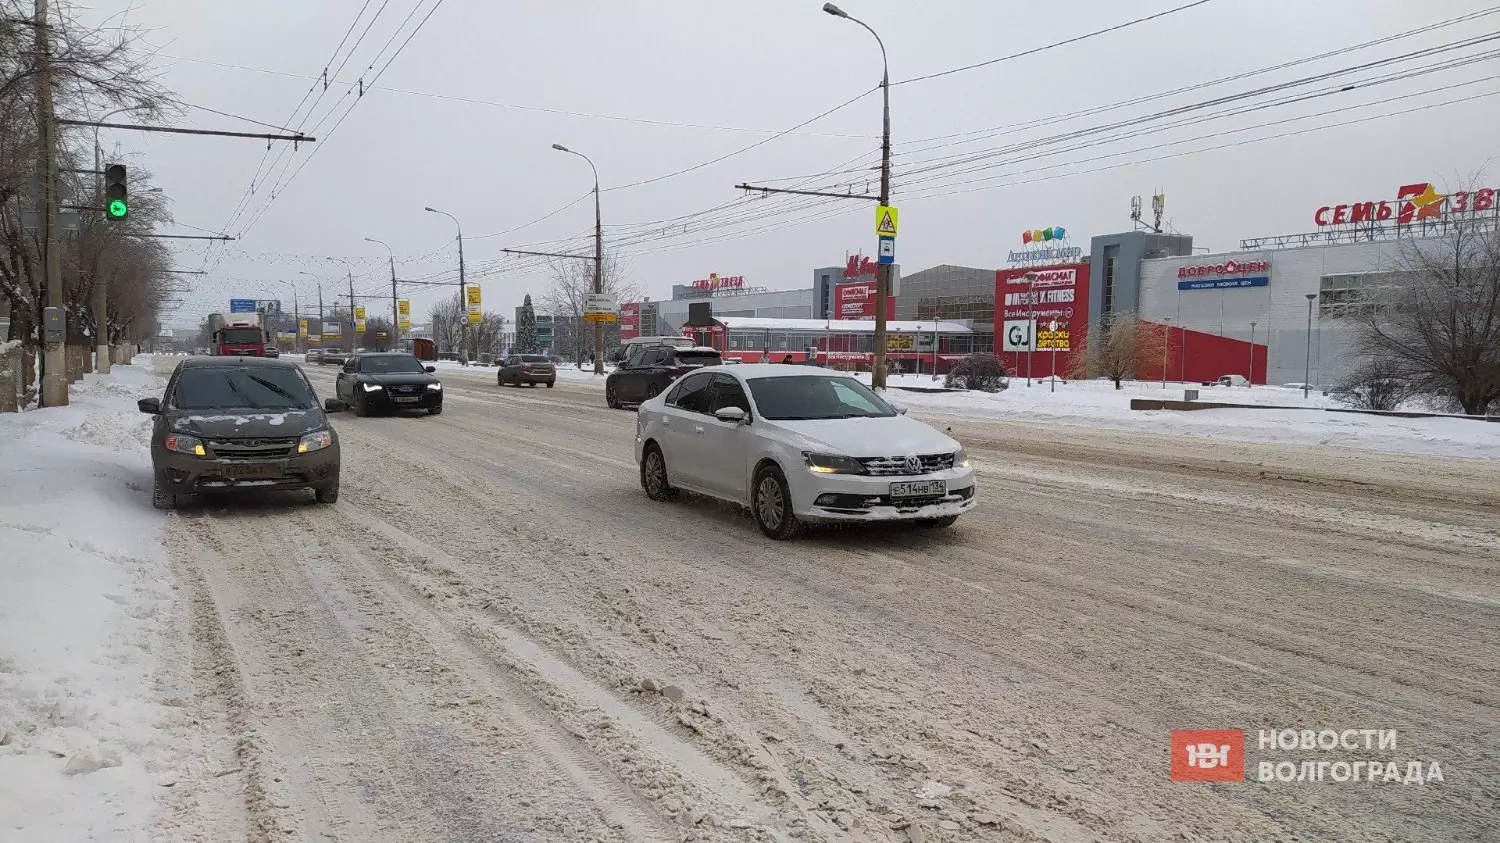 Проспект Ленина в Тракторозаводском районе однозначно чистили, хотя местами снег на дороге всё равно оставался